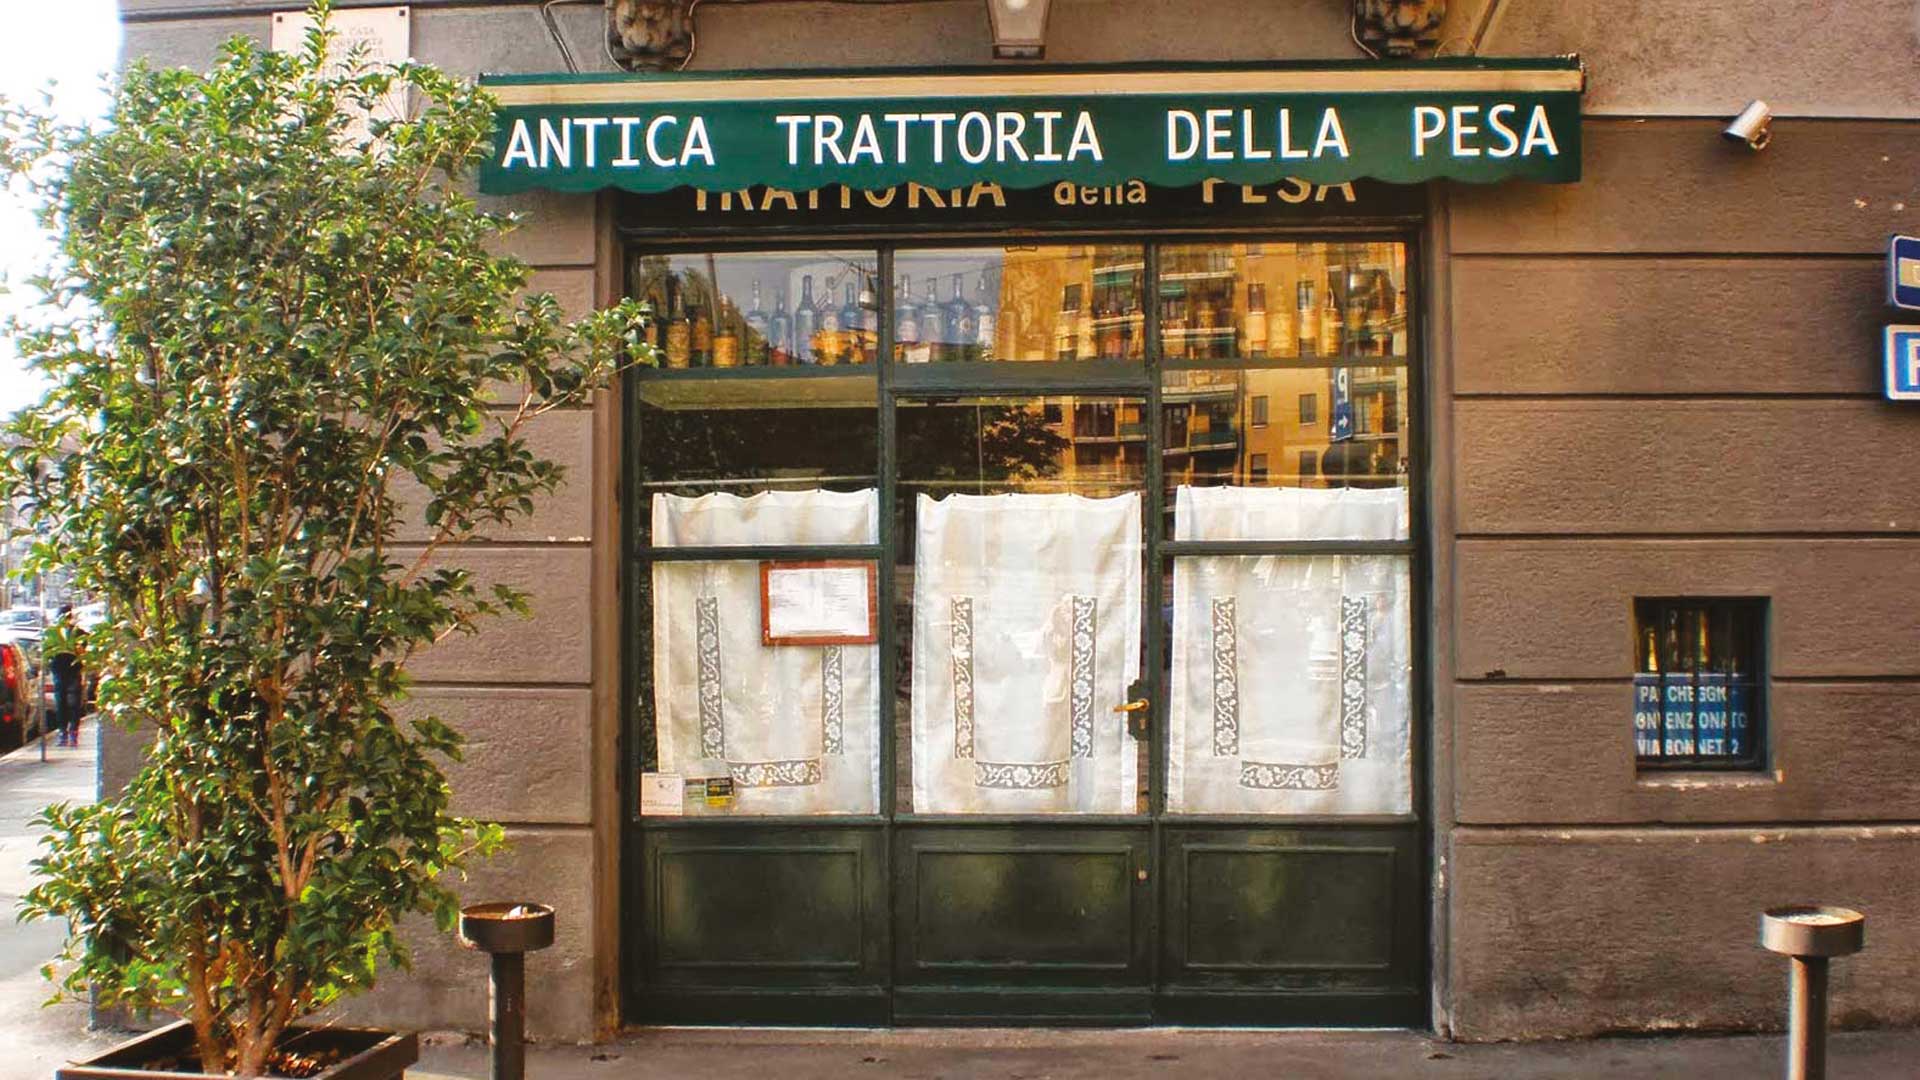 Antica-Trattoria-della-Pesa-milano-robb-report-italia